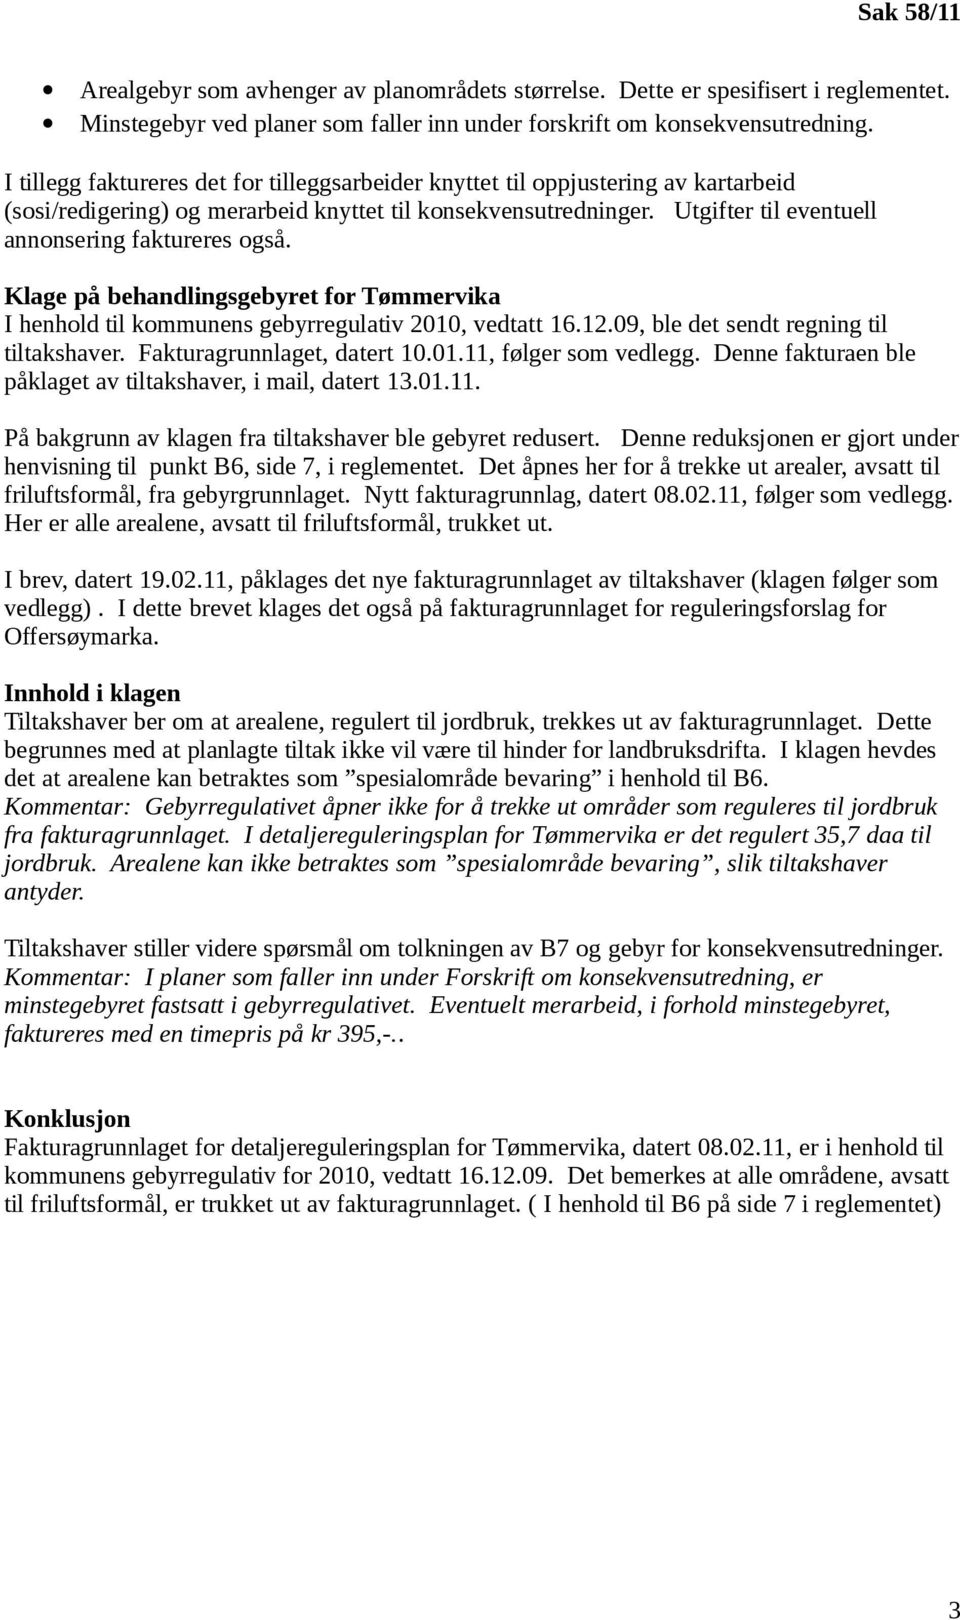 Utgifter til eventuell annonsering faktureres også. Klage på behandlingsgebyret for Tømmervika I henhold til kommunens gebyrregulativ 2010, vedtatt 16.12.09, ble det sendt regning til tiltakshaver.